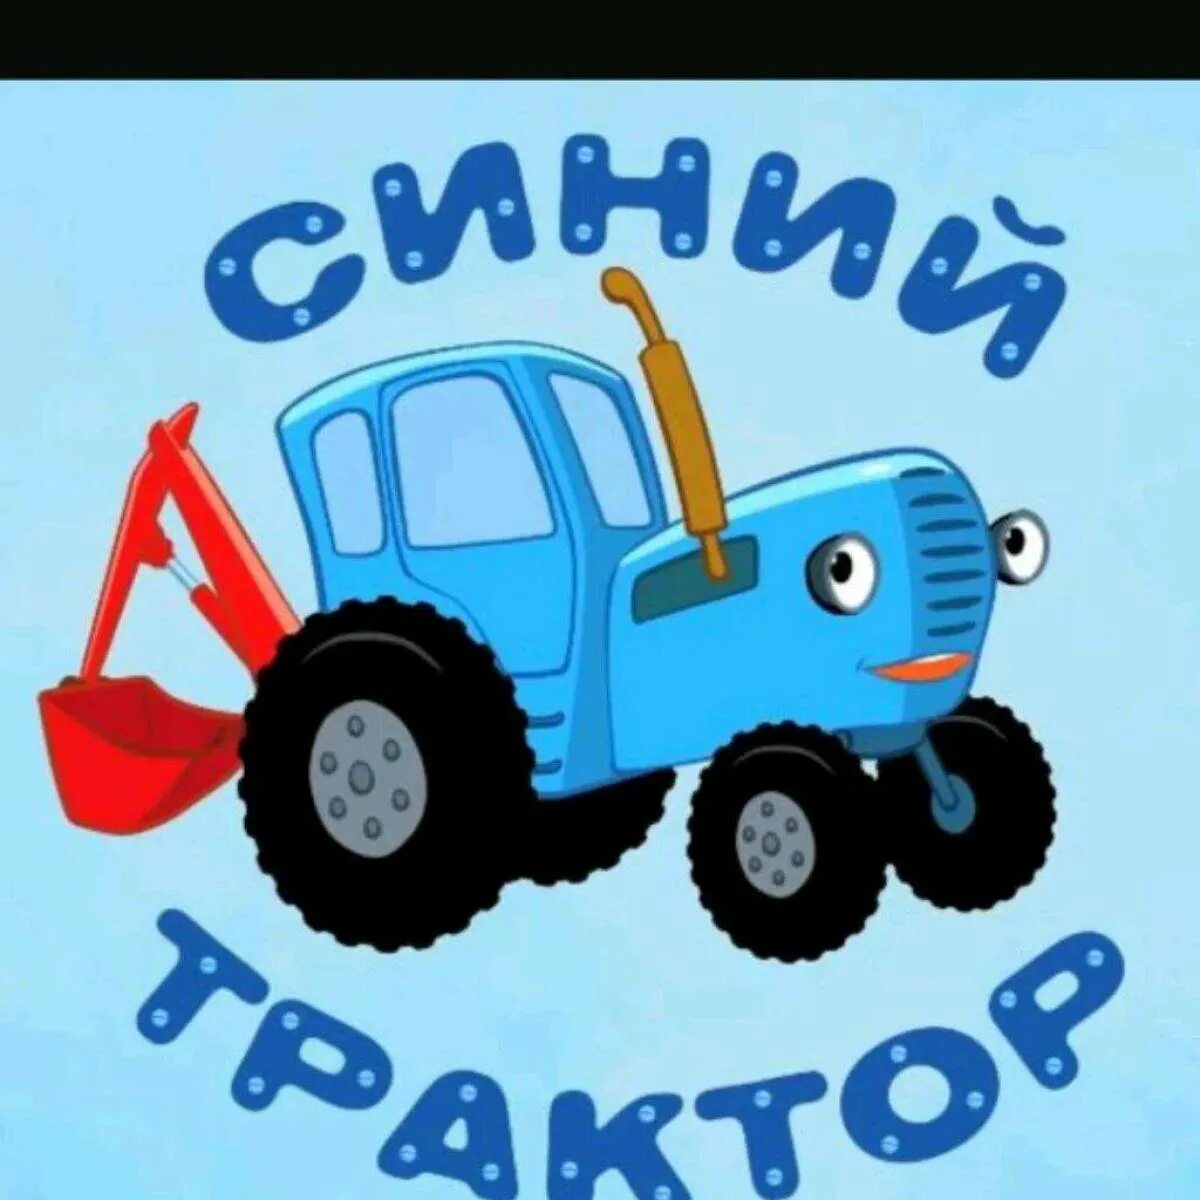 Синий трактор трактор Гоша. Сини1 синий трактор. Габор синий трактор. Синий трактор для малышей ТРАКТОРЕНОК. Синий трактор смоленск